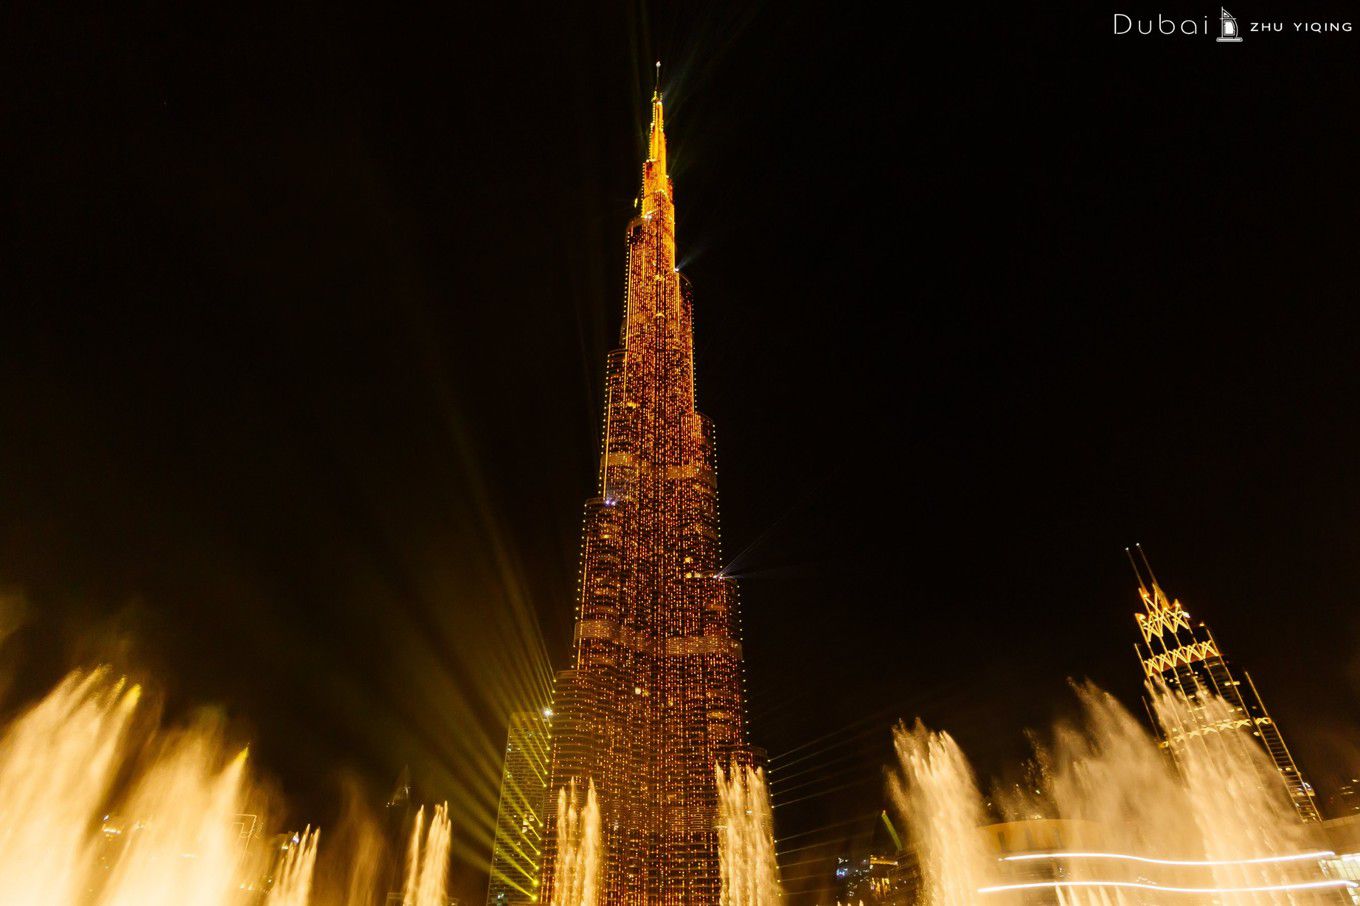 原创世界最壮观的音乐喷泉,水柱喷到50层楼高,迪拜这次又逆天了!